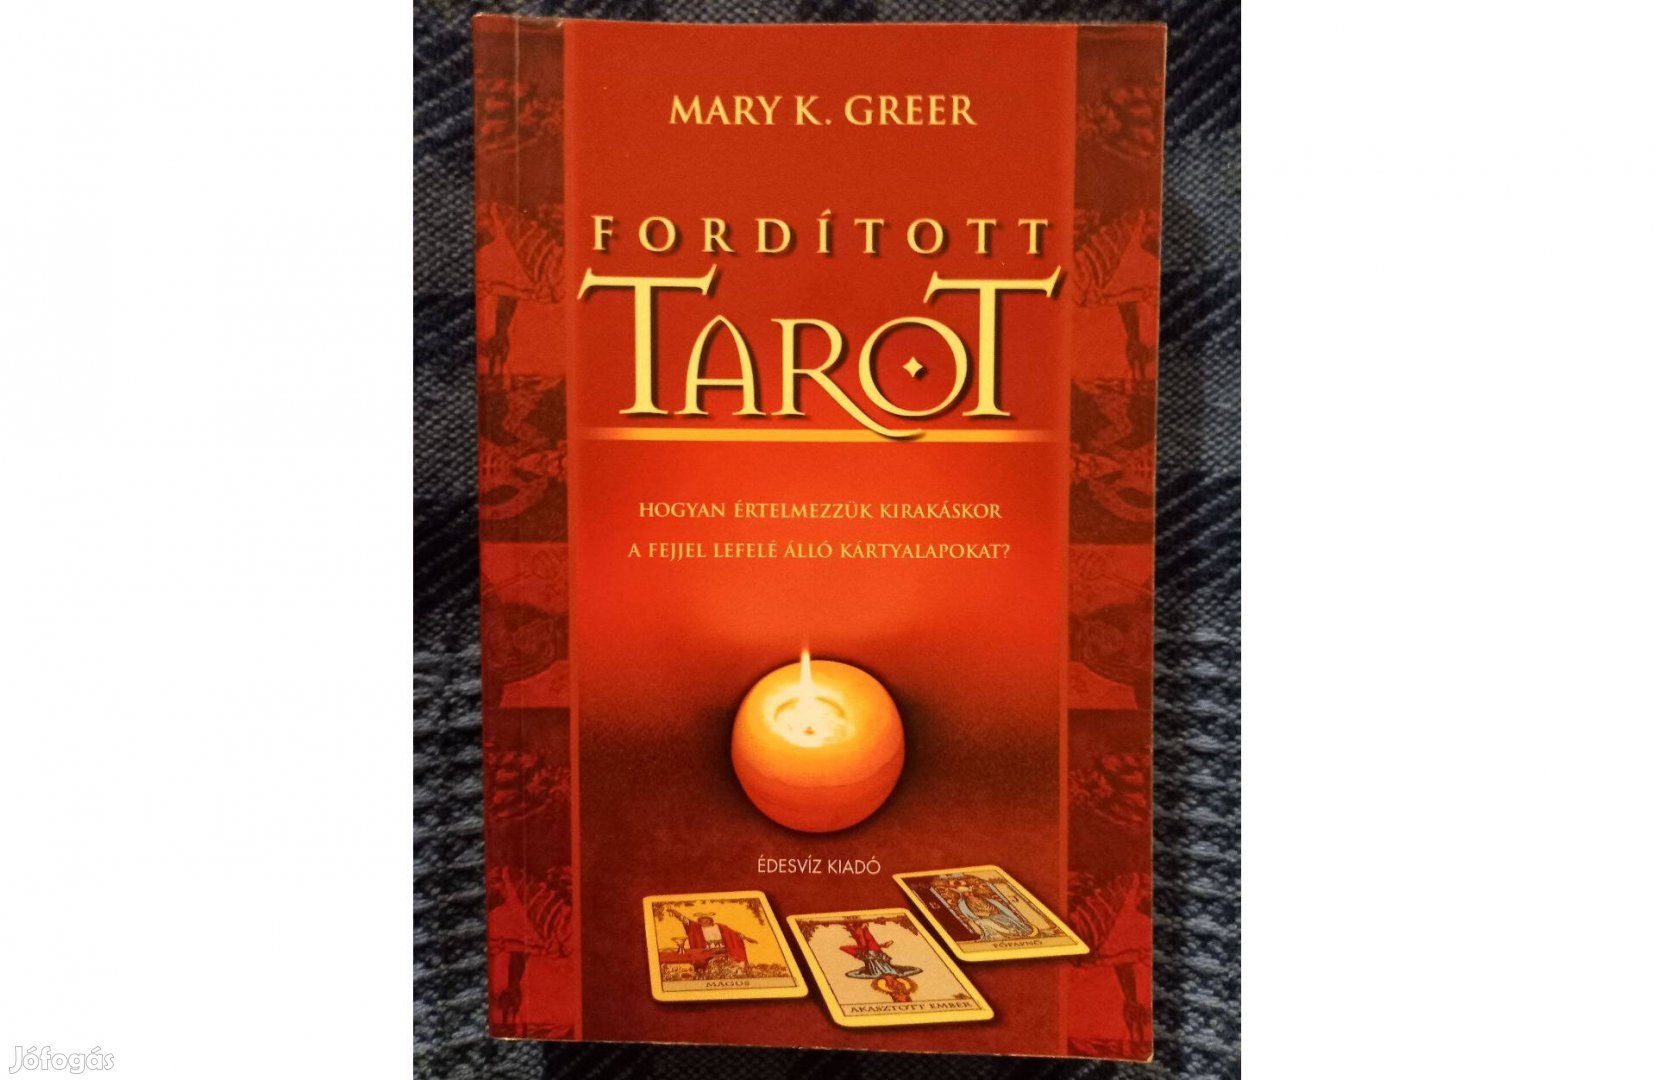 Mary K. Greer: Fordított tarot című könyv jó állapotban eladó